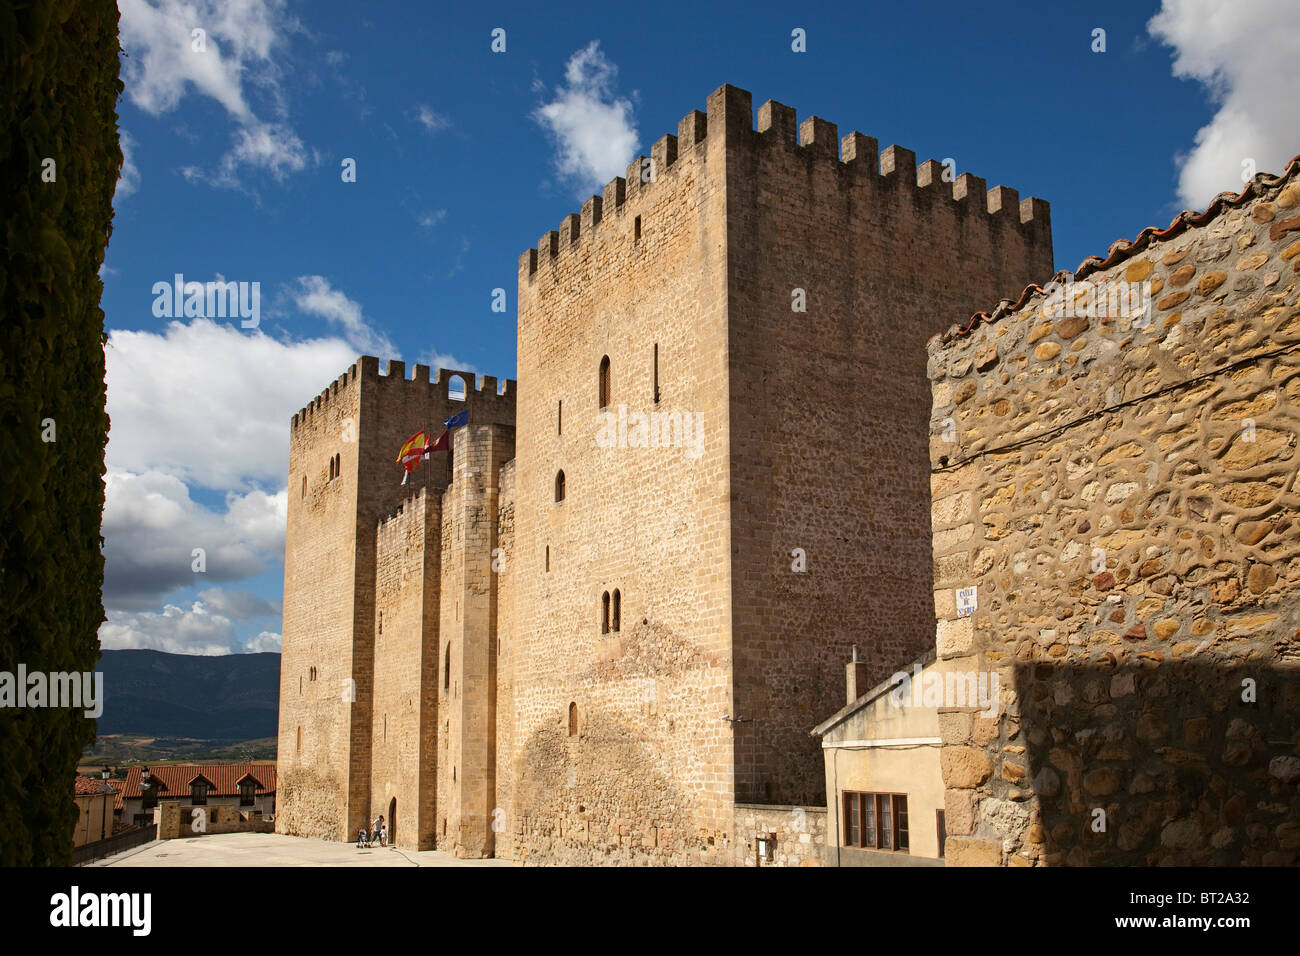 Medina de pomar hi-res stock photography and images - Alamy